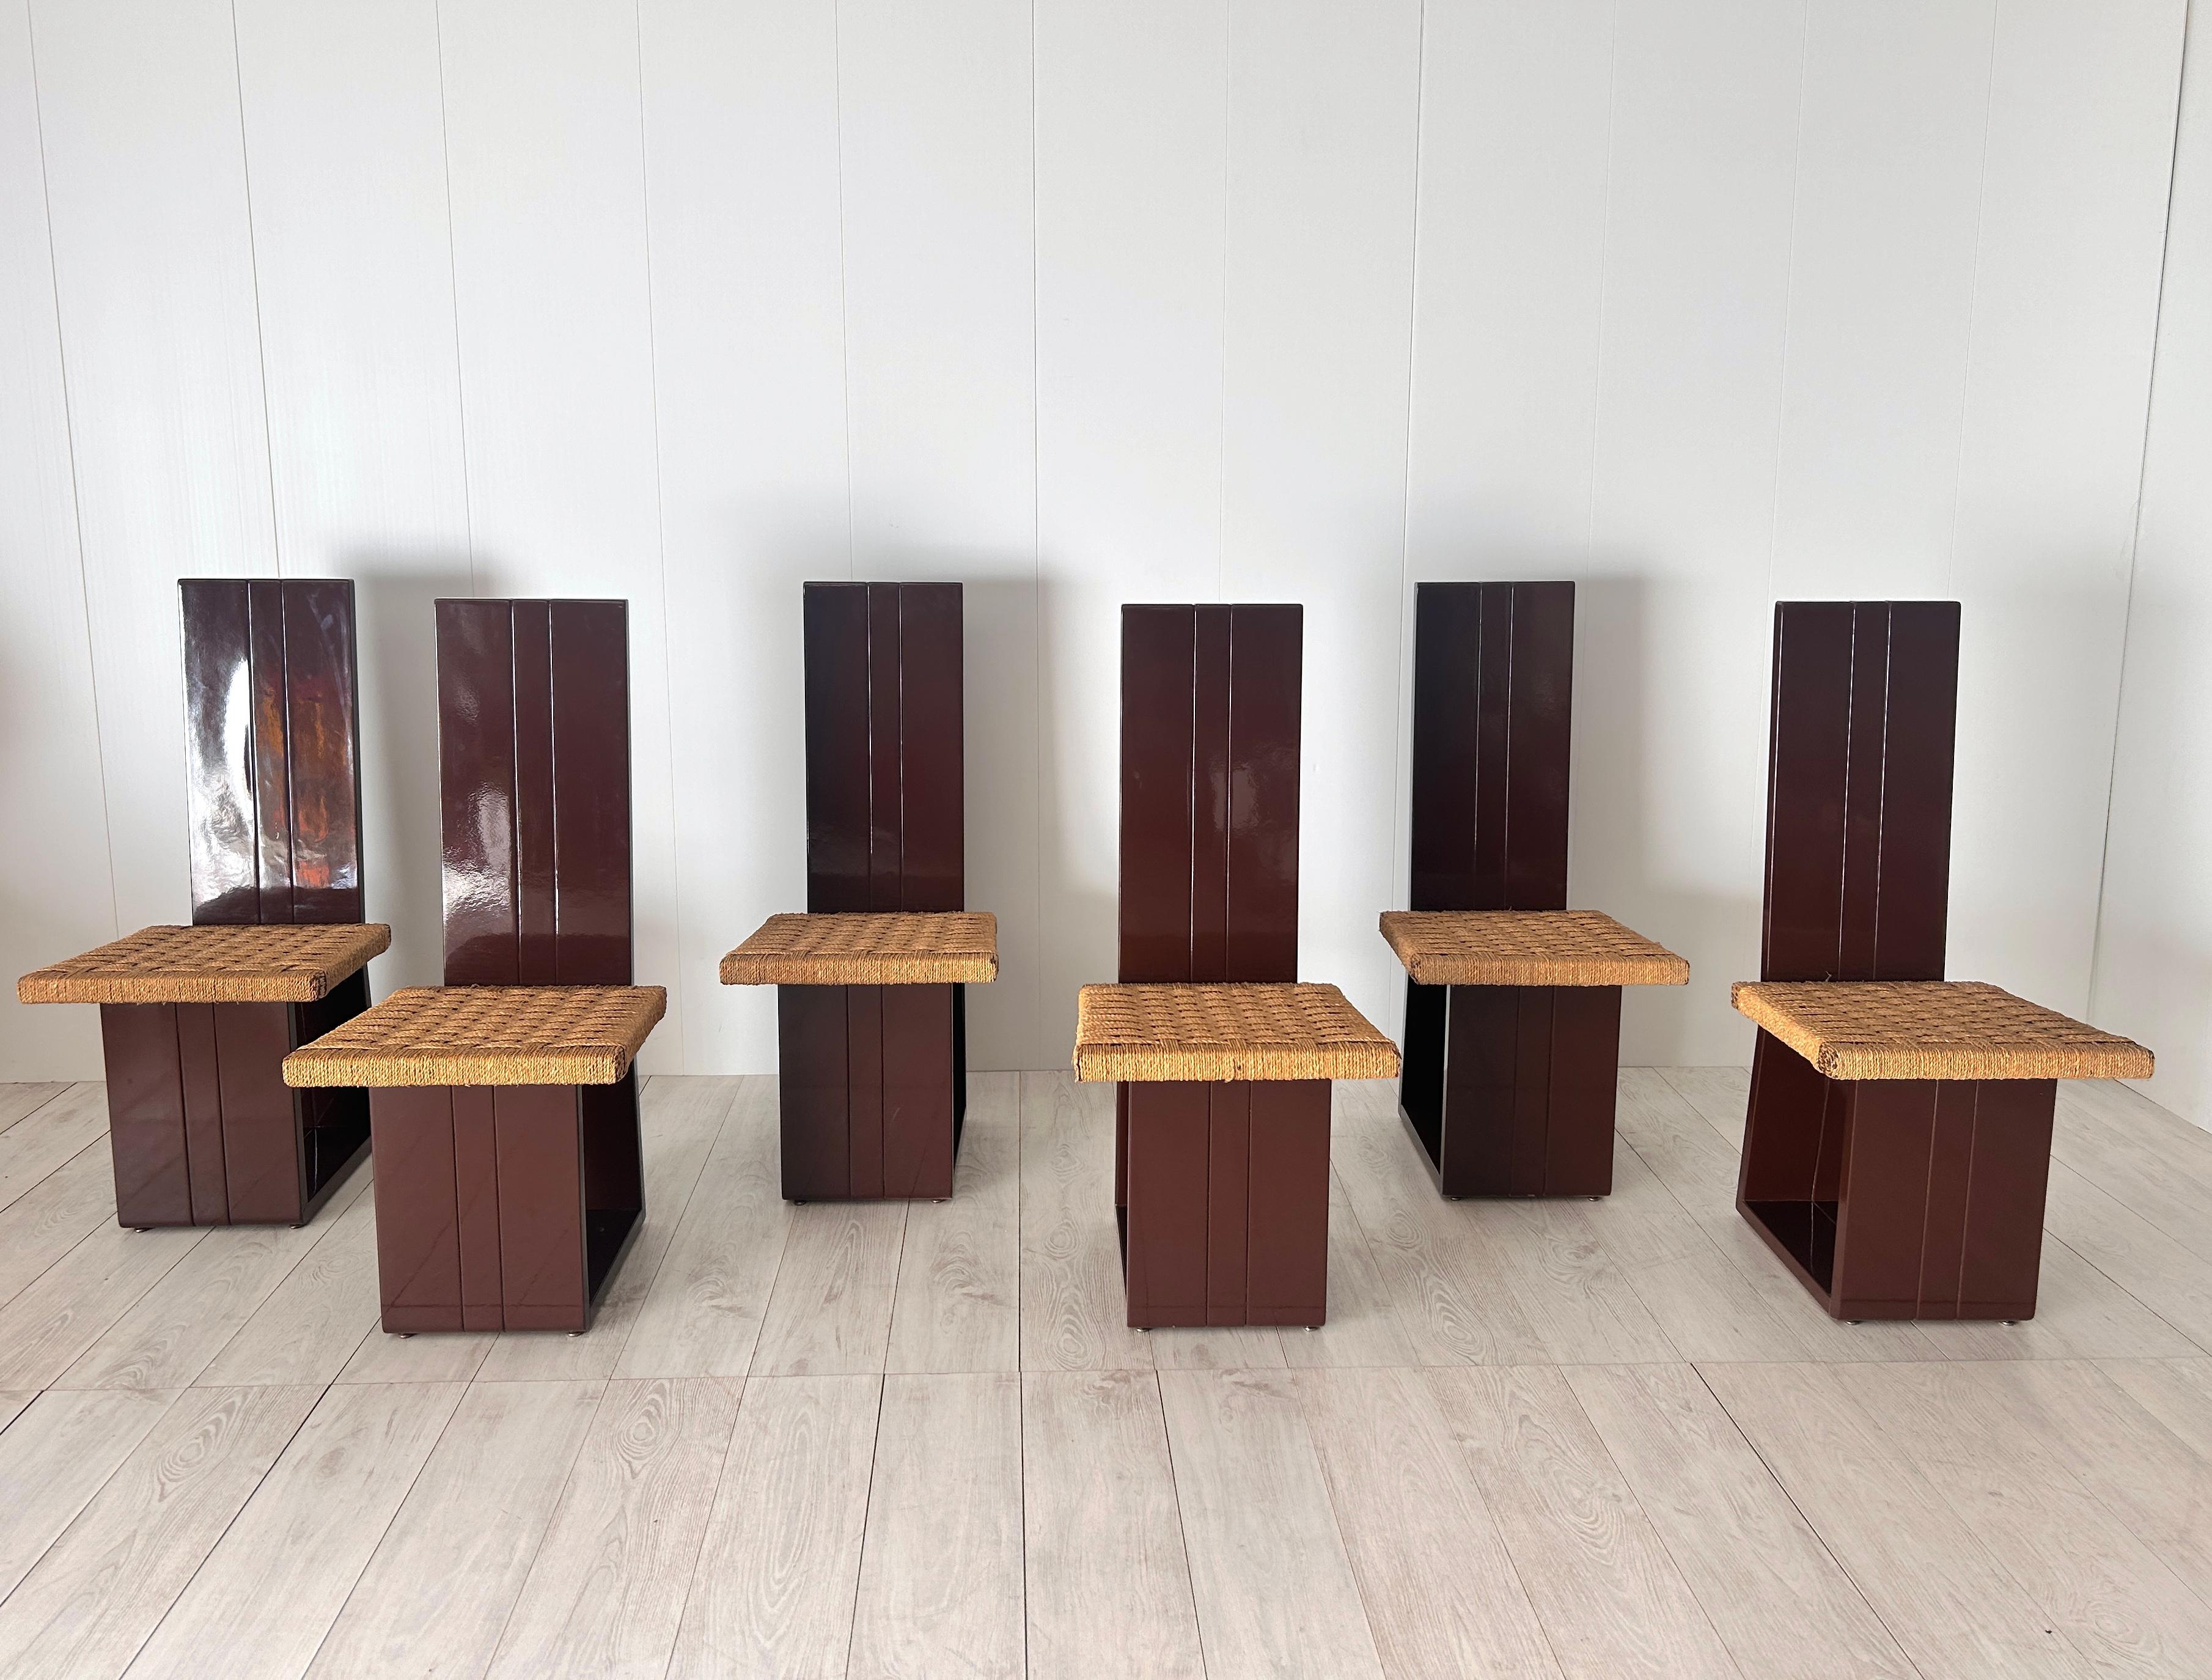 Set von 6 Einzelunterkünften mit Holzverkleidung und Sitzgelegenheiten aus Holz.
